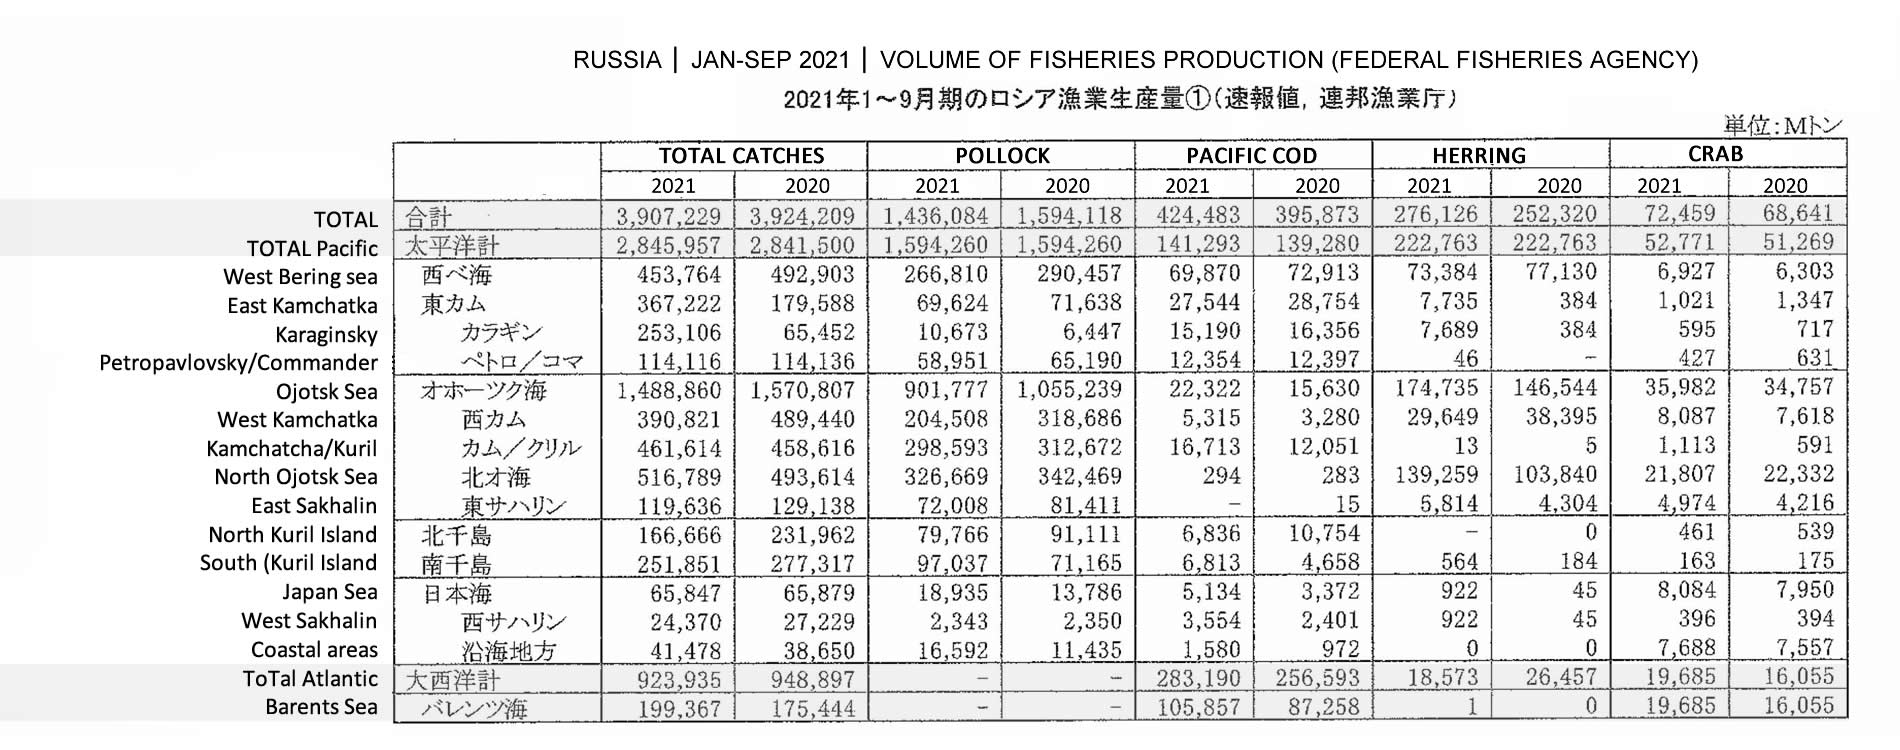 2021122801ing-Volumen de producción de la pesca de Rusia FIS seafood_media.jpg